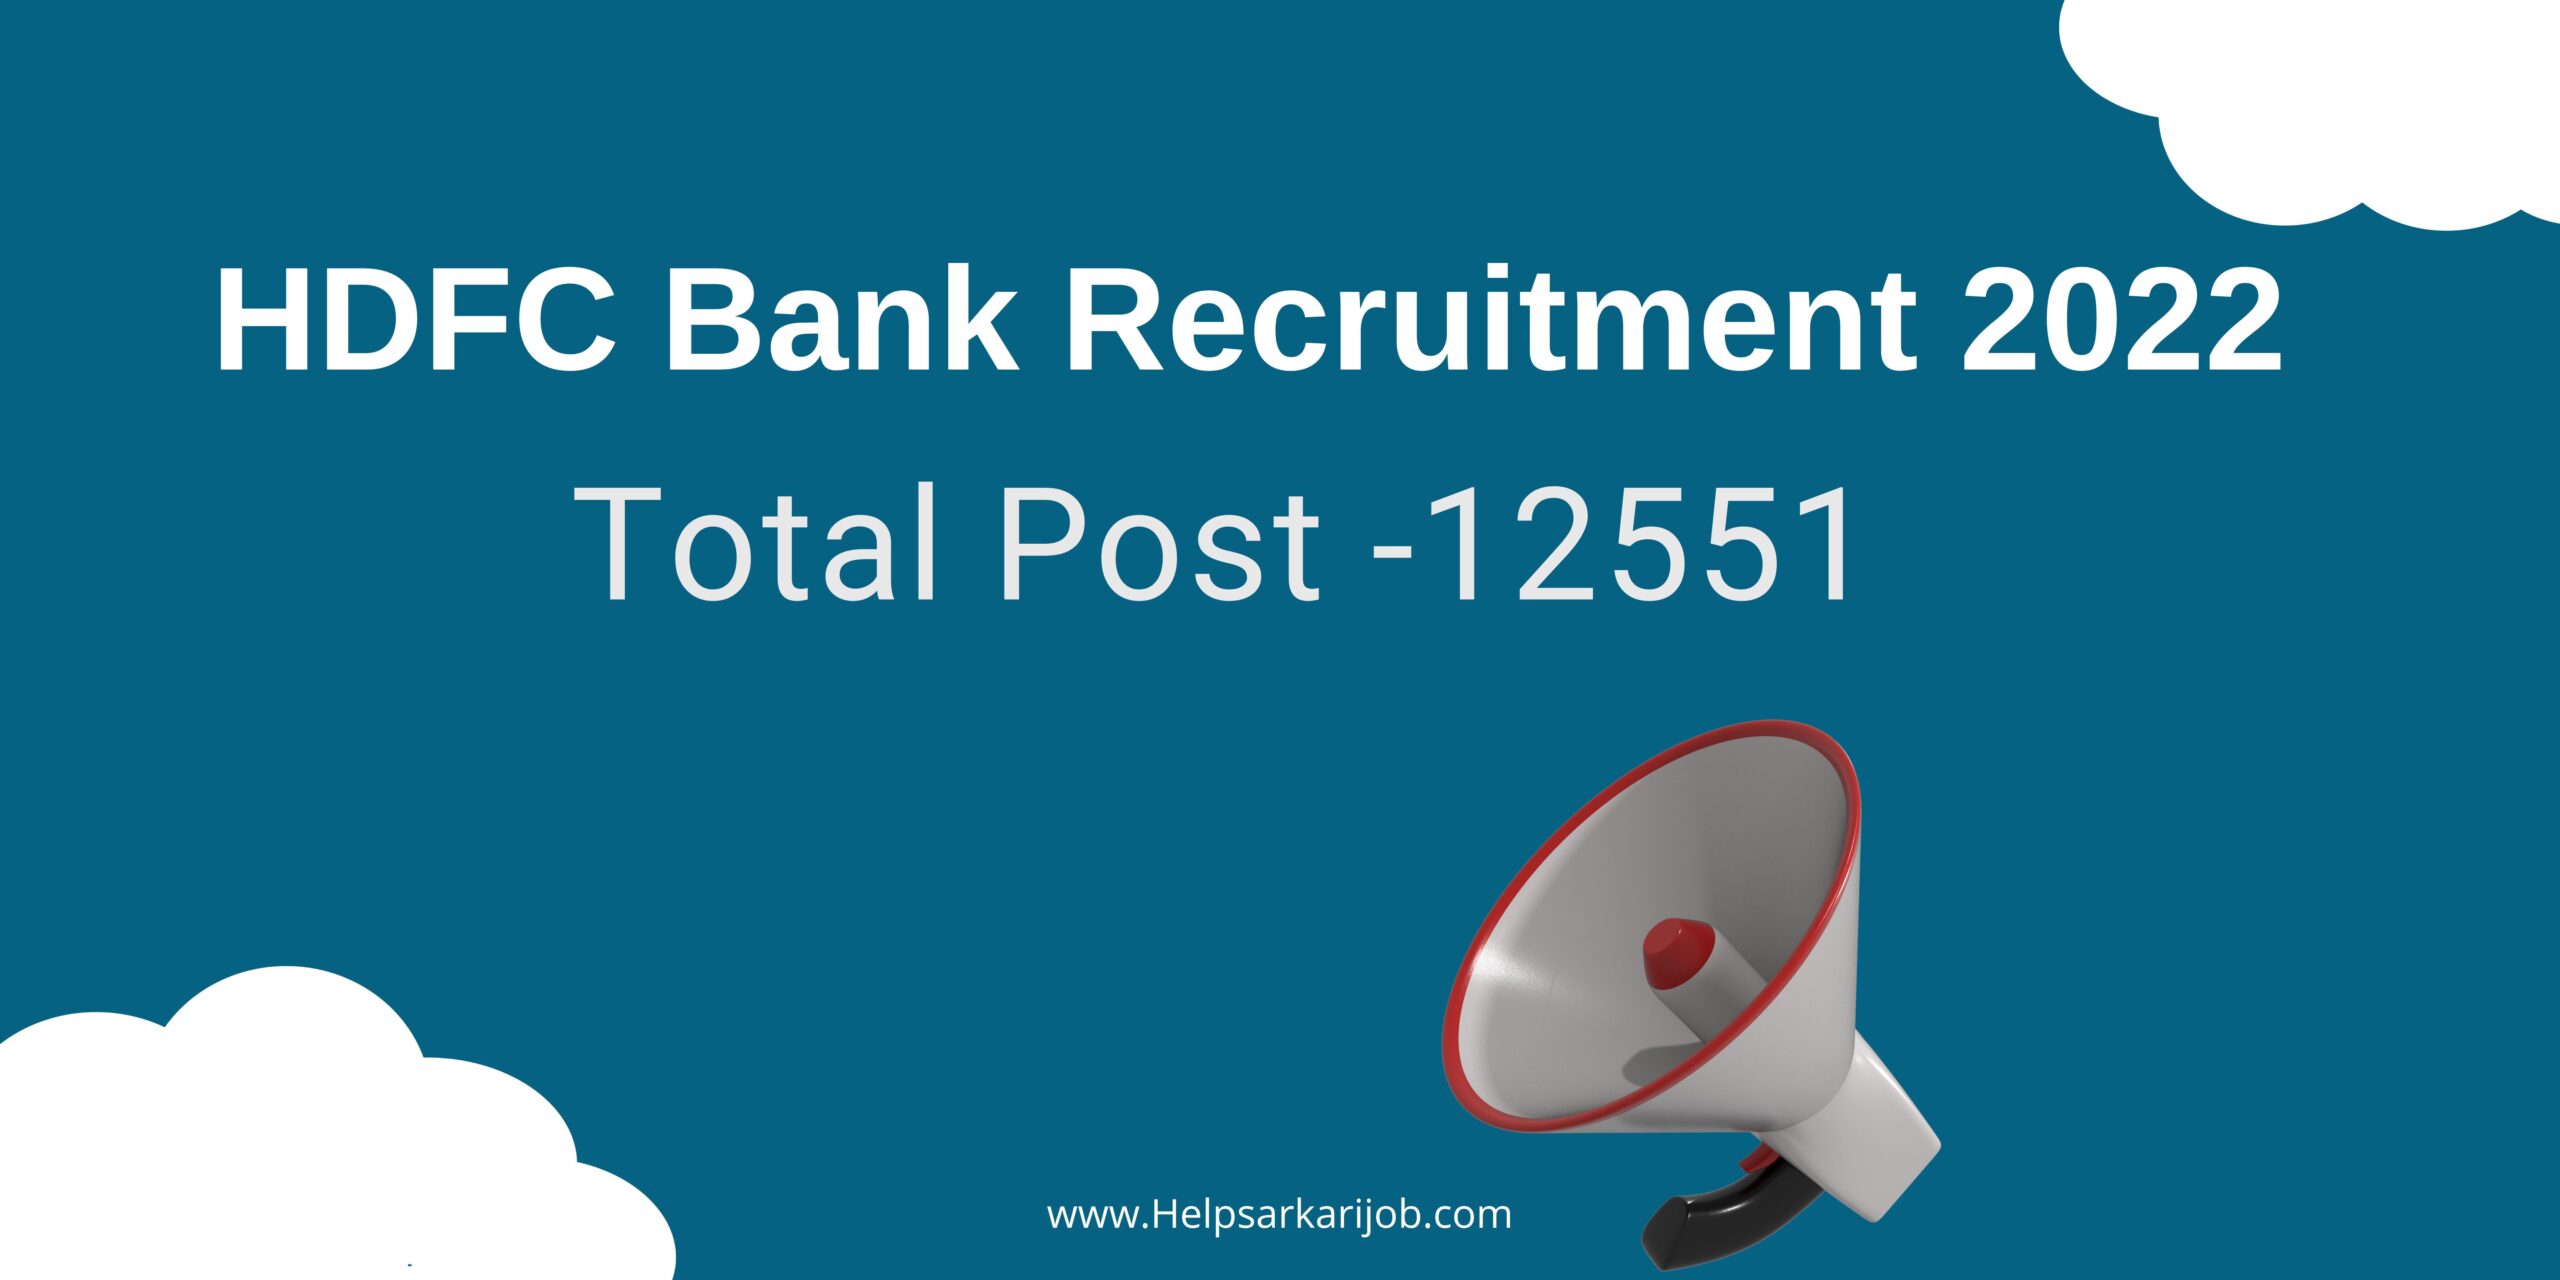 HDFC Bank Recruitment 2022 Information